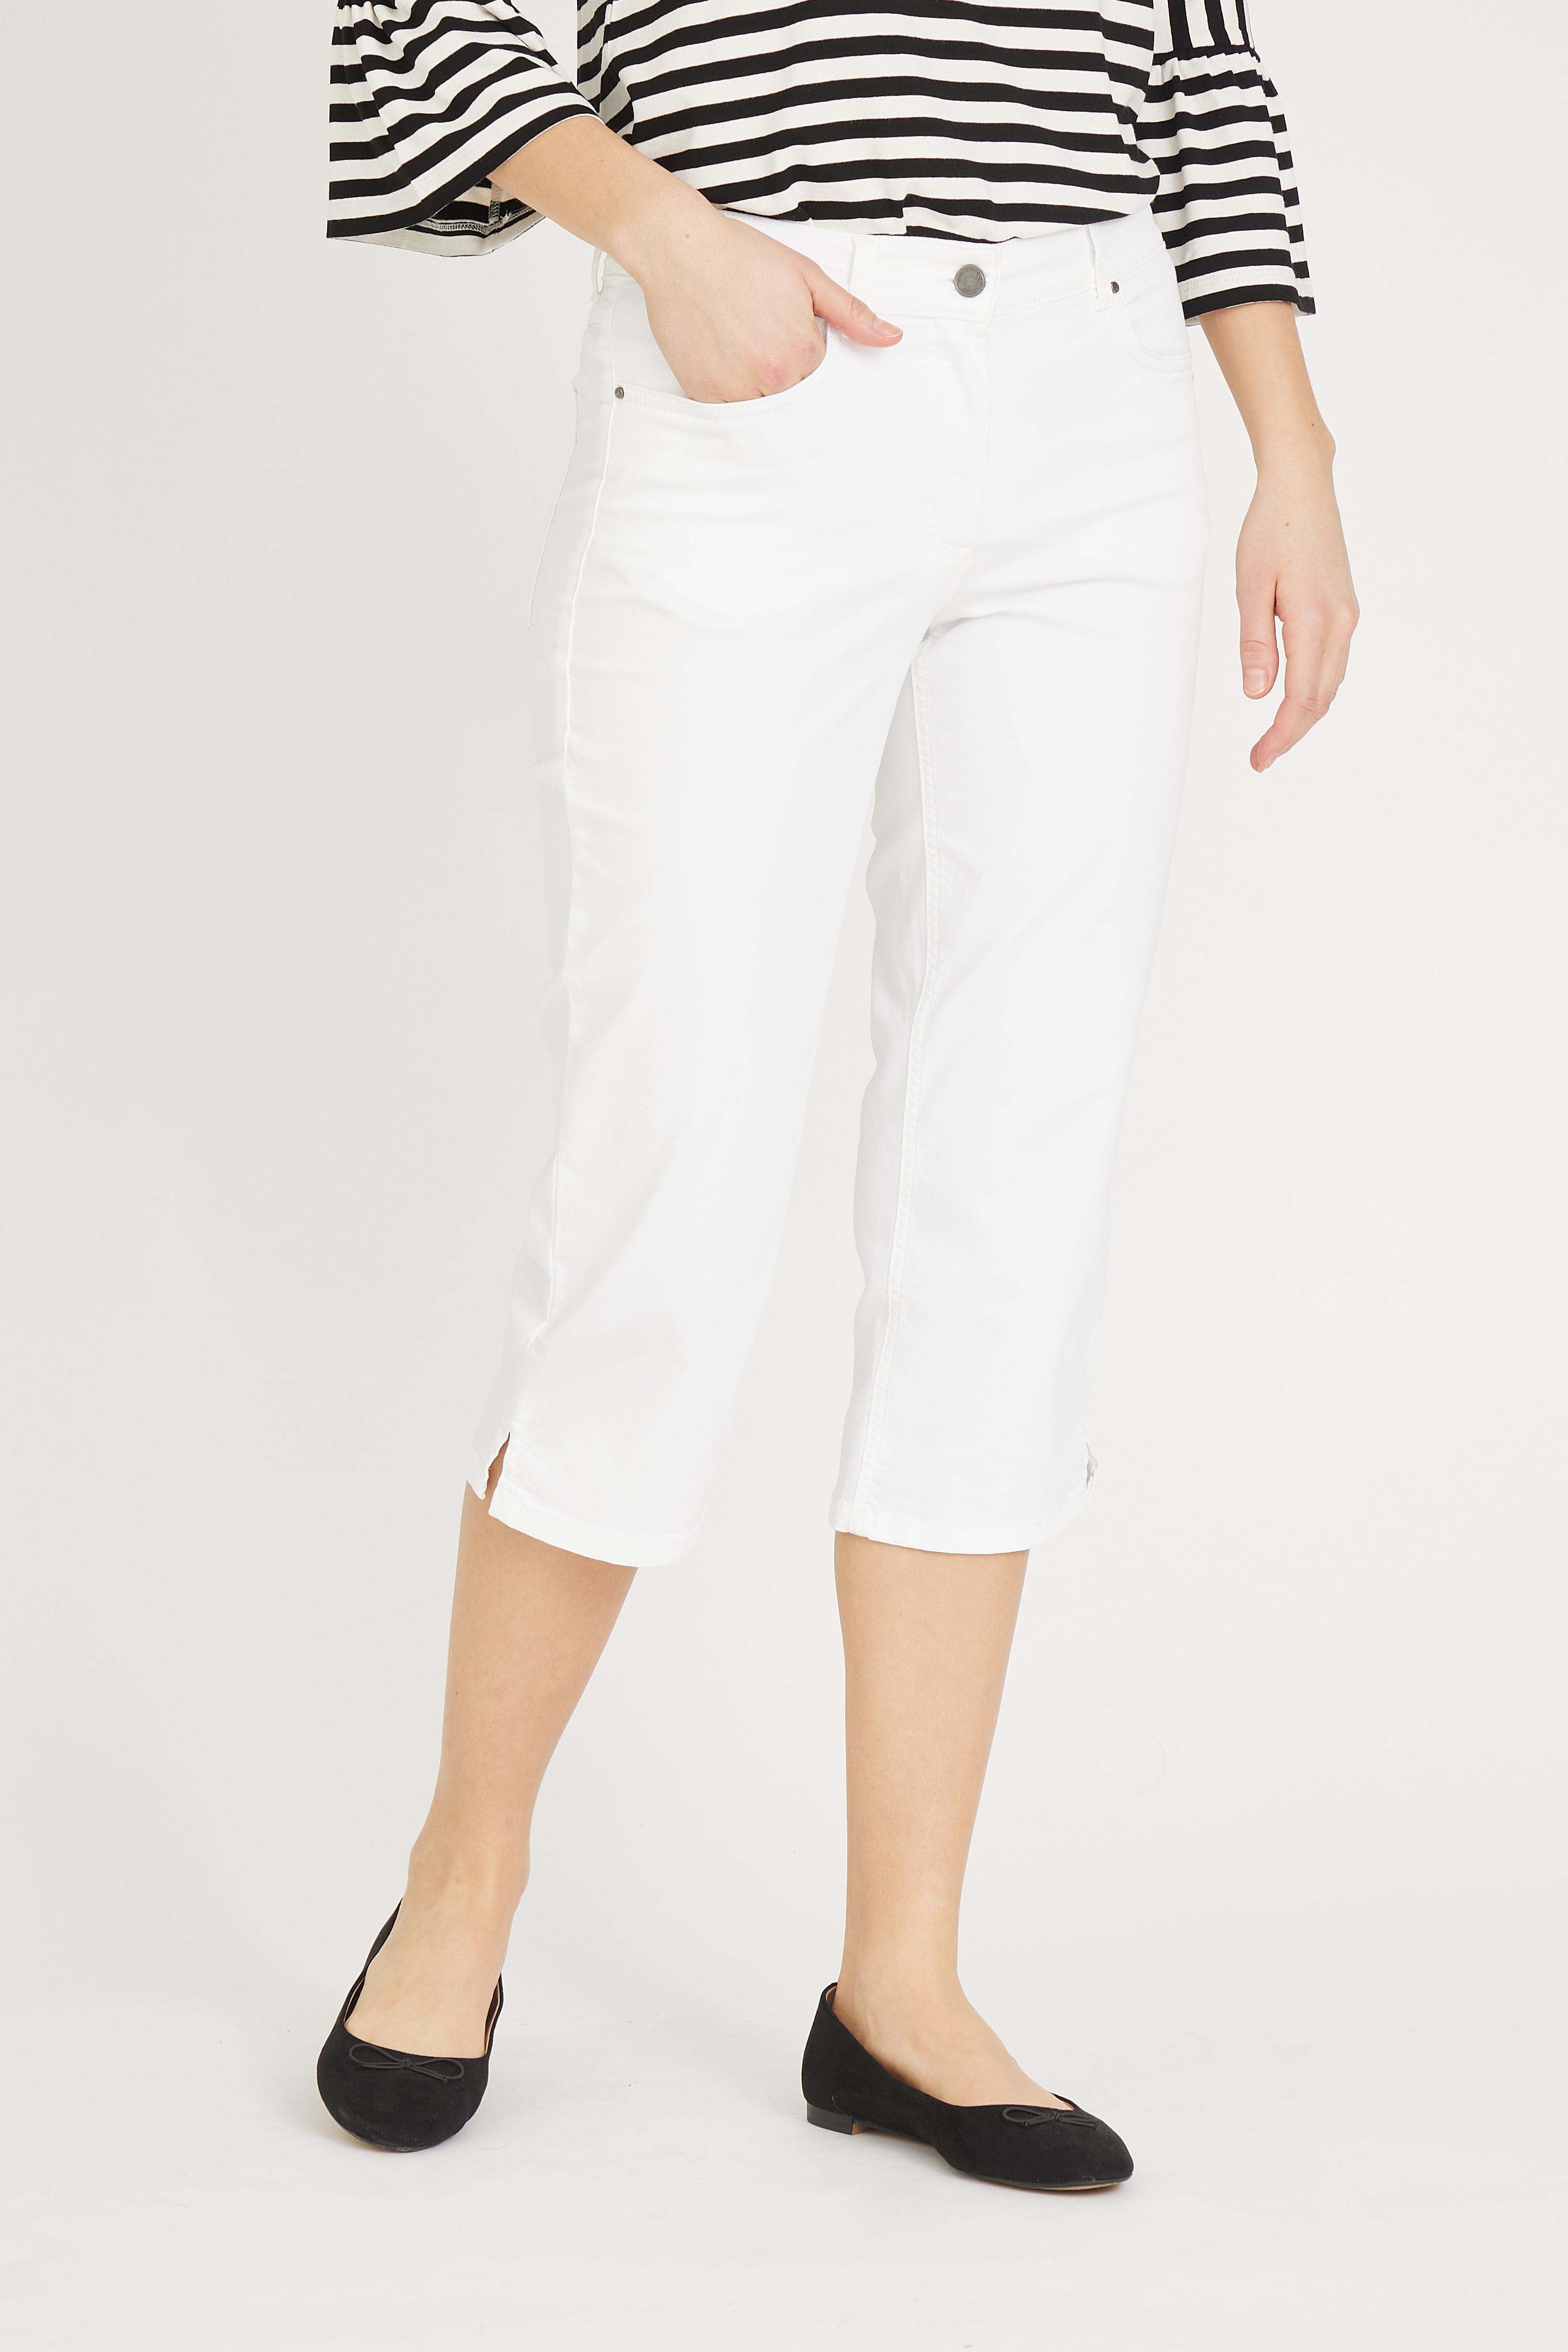 LAURIE  Charlotte Regular Capri Medium Length Trousers REGULAR 10100 White